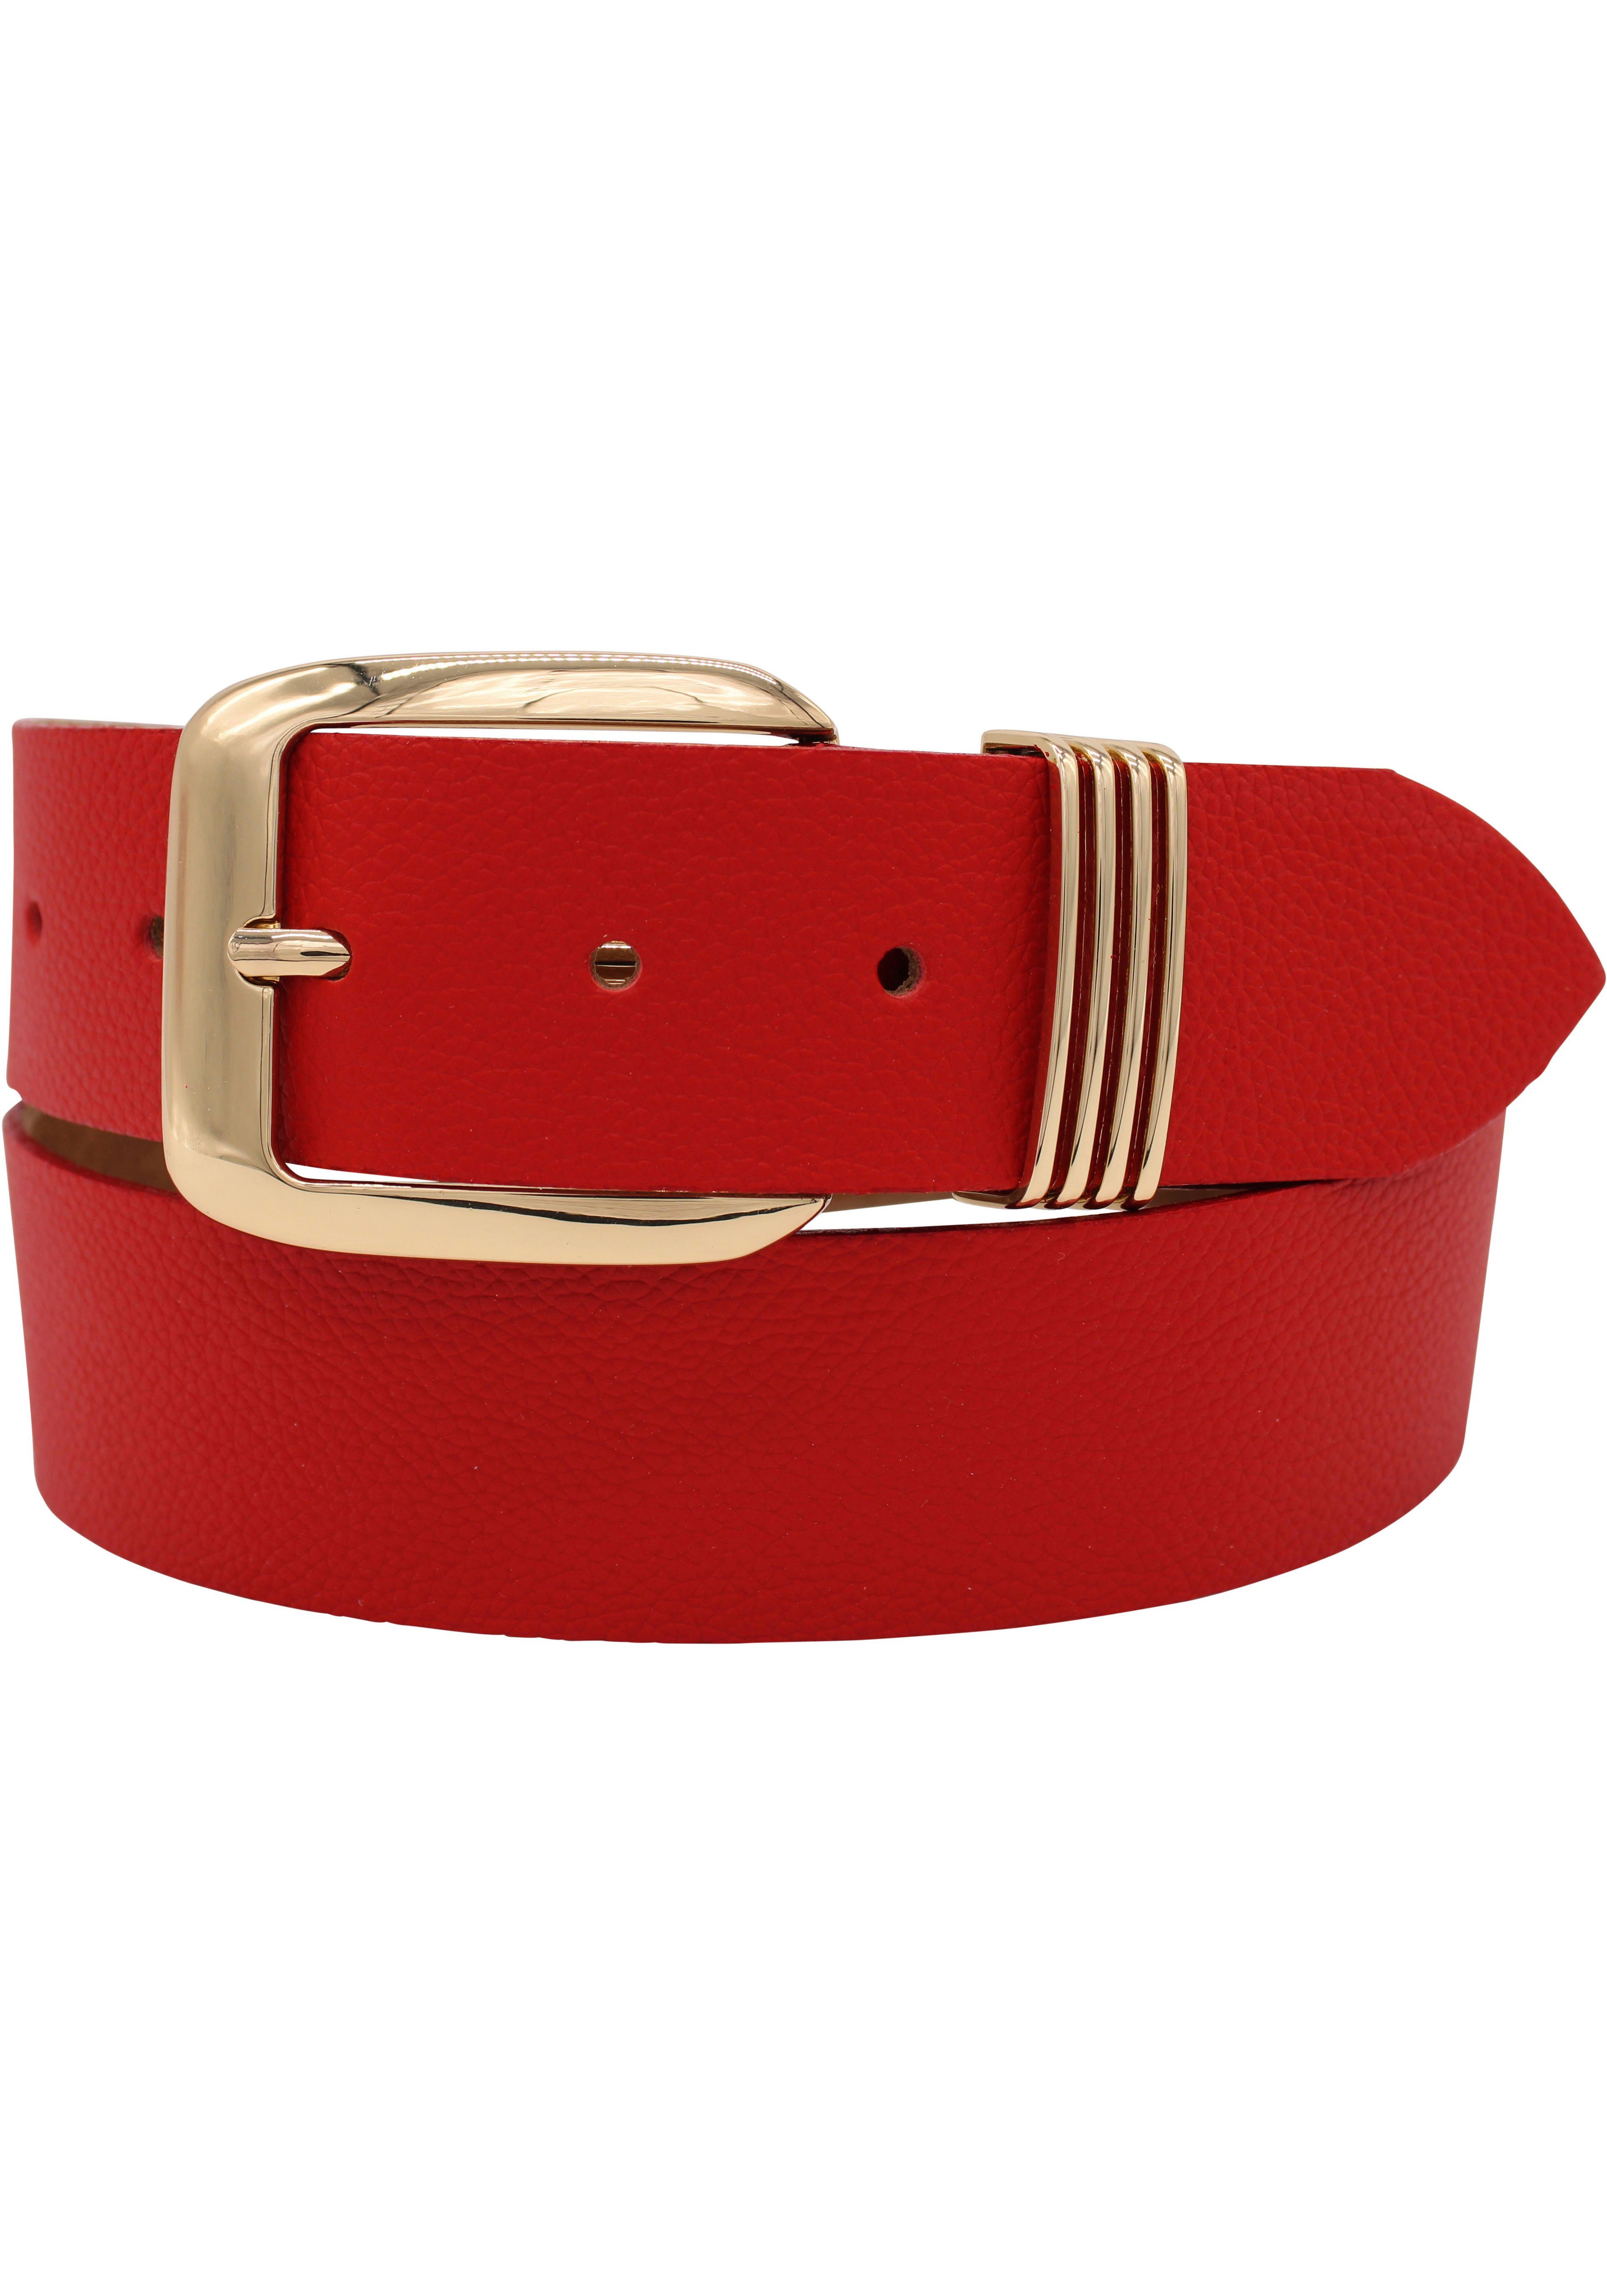 Gürtelschlaufe mit Ledergürtel rot eleganter AnnaMatoni